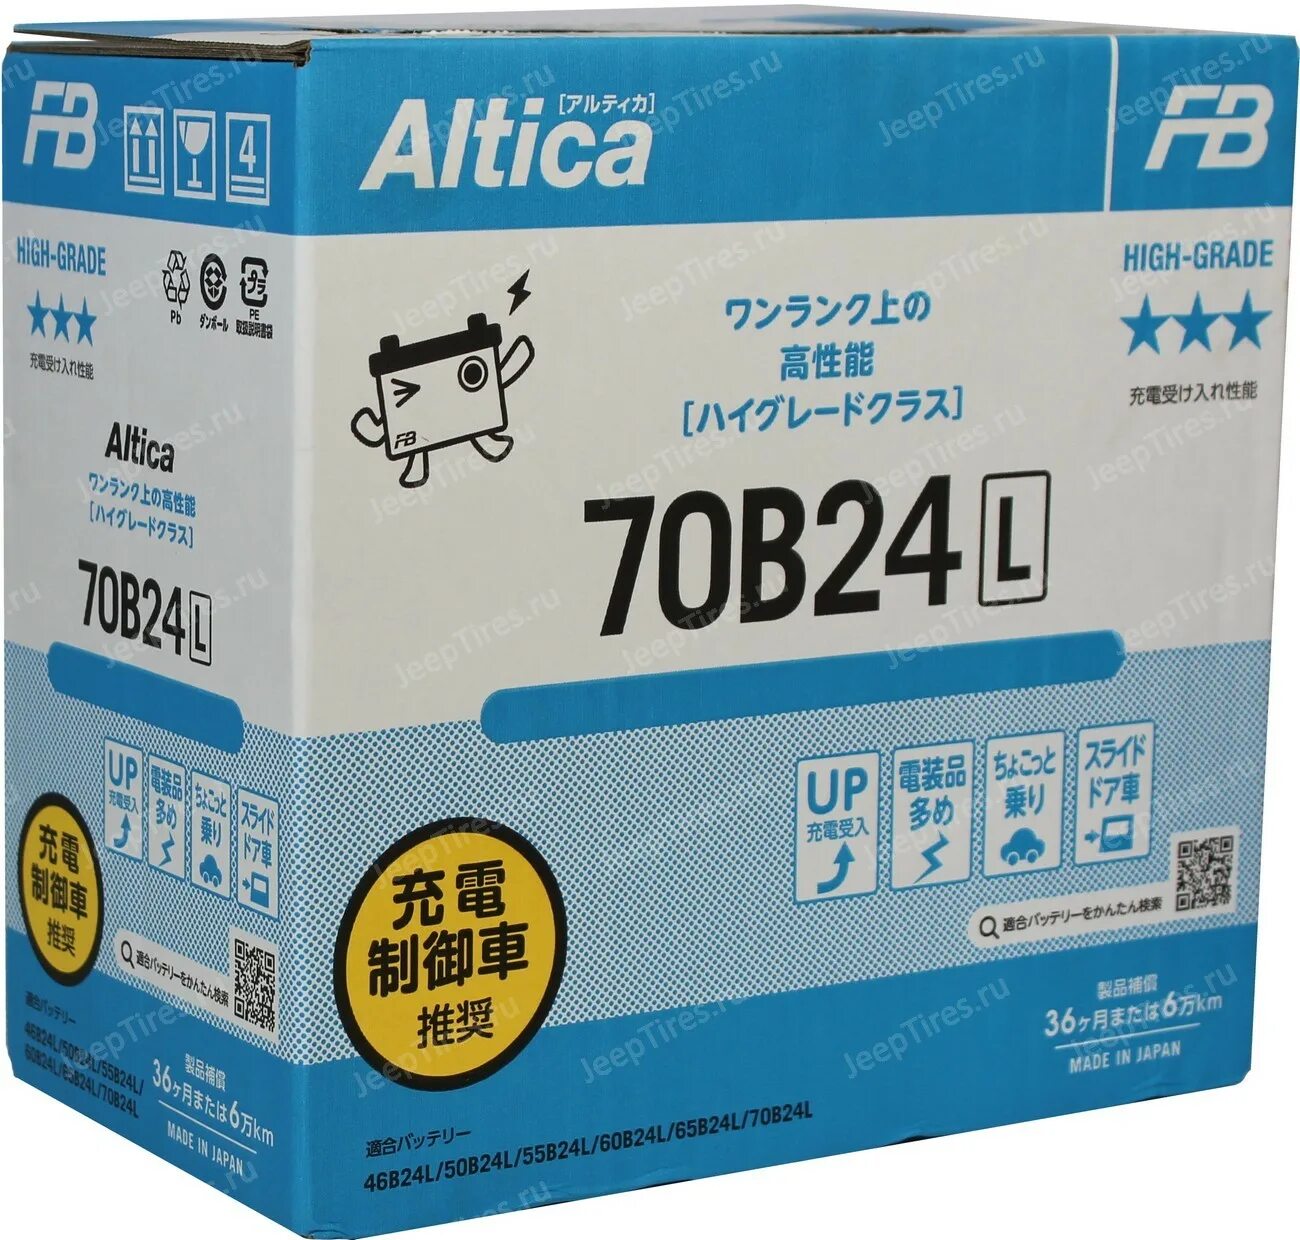 Аккумулятор fb Altica High-Grade. Furukawa Battery fb 70b24r Altica. Fb Altica High-Grade. Fb Altica High-Grade 50 Ач 70b24l.